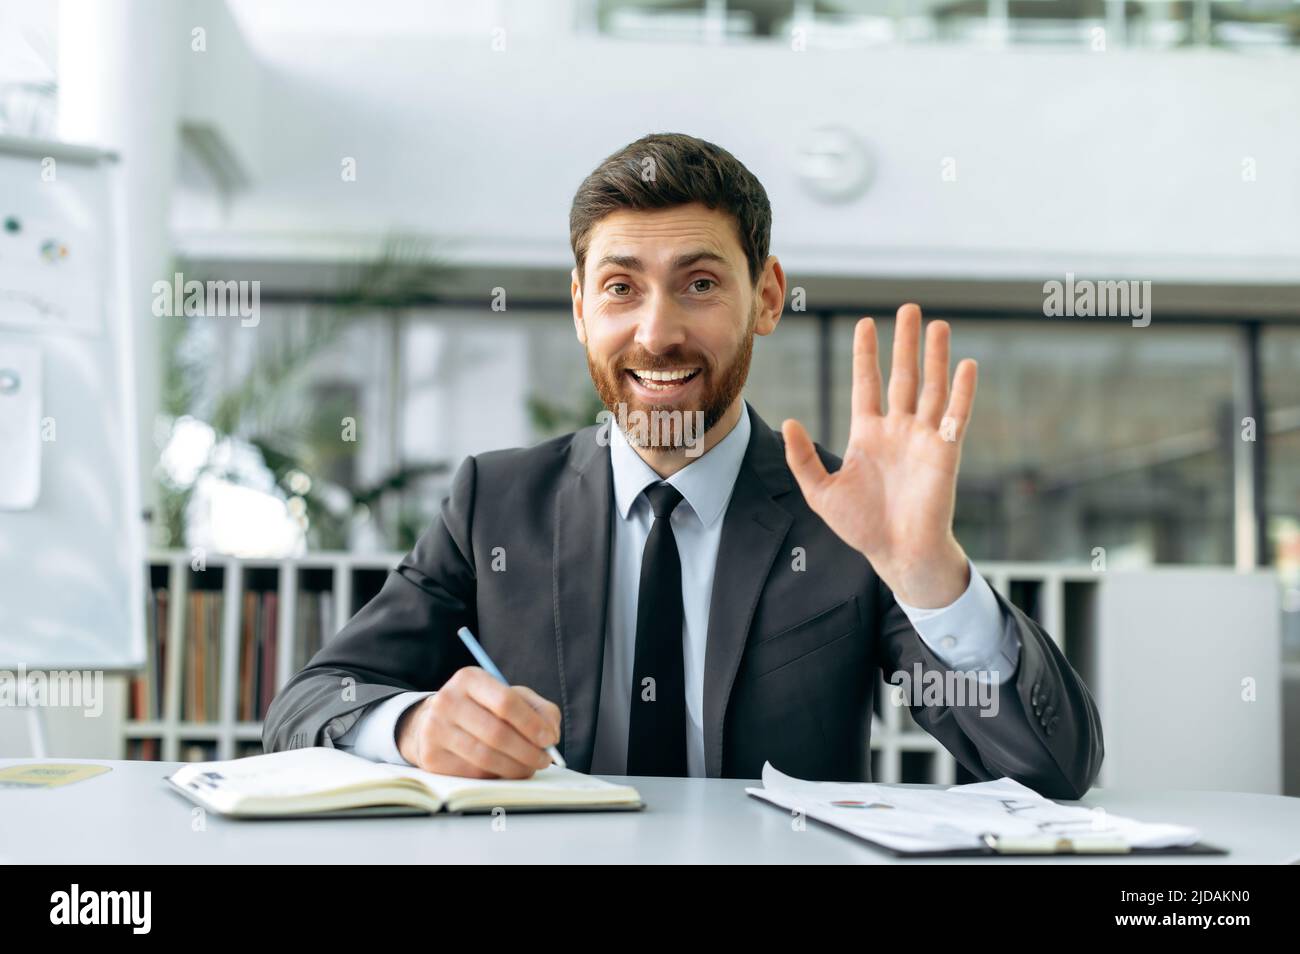 Ambitieux homme d'affaires caucasien positif, directeur d'entreprise, superviseur, assis dans un bureau moderne, dans des vêtements d'affaires, tenant une réunion vidéo en ligne avec des collègues, en agitant sa main dans le salut, sourires Banque D'Images